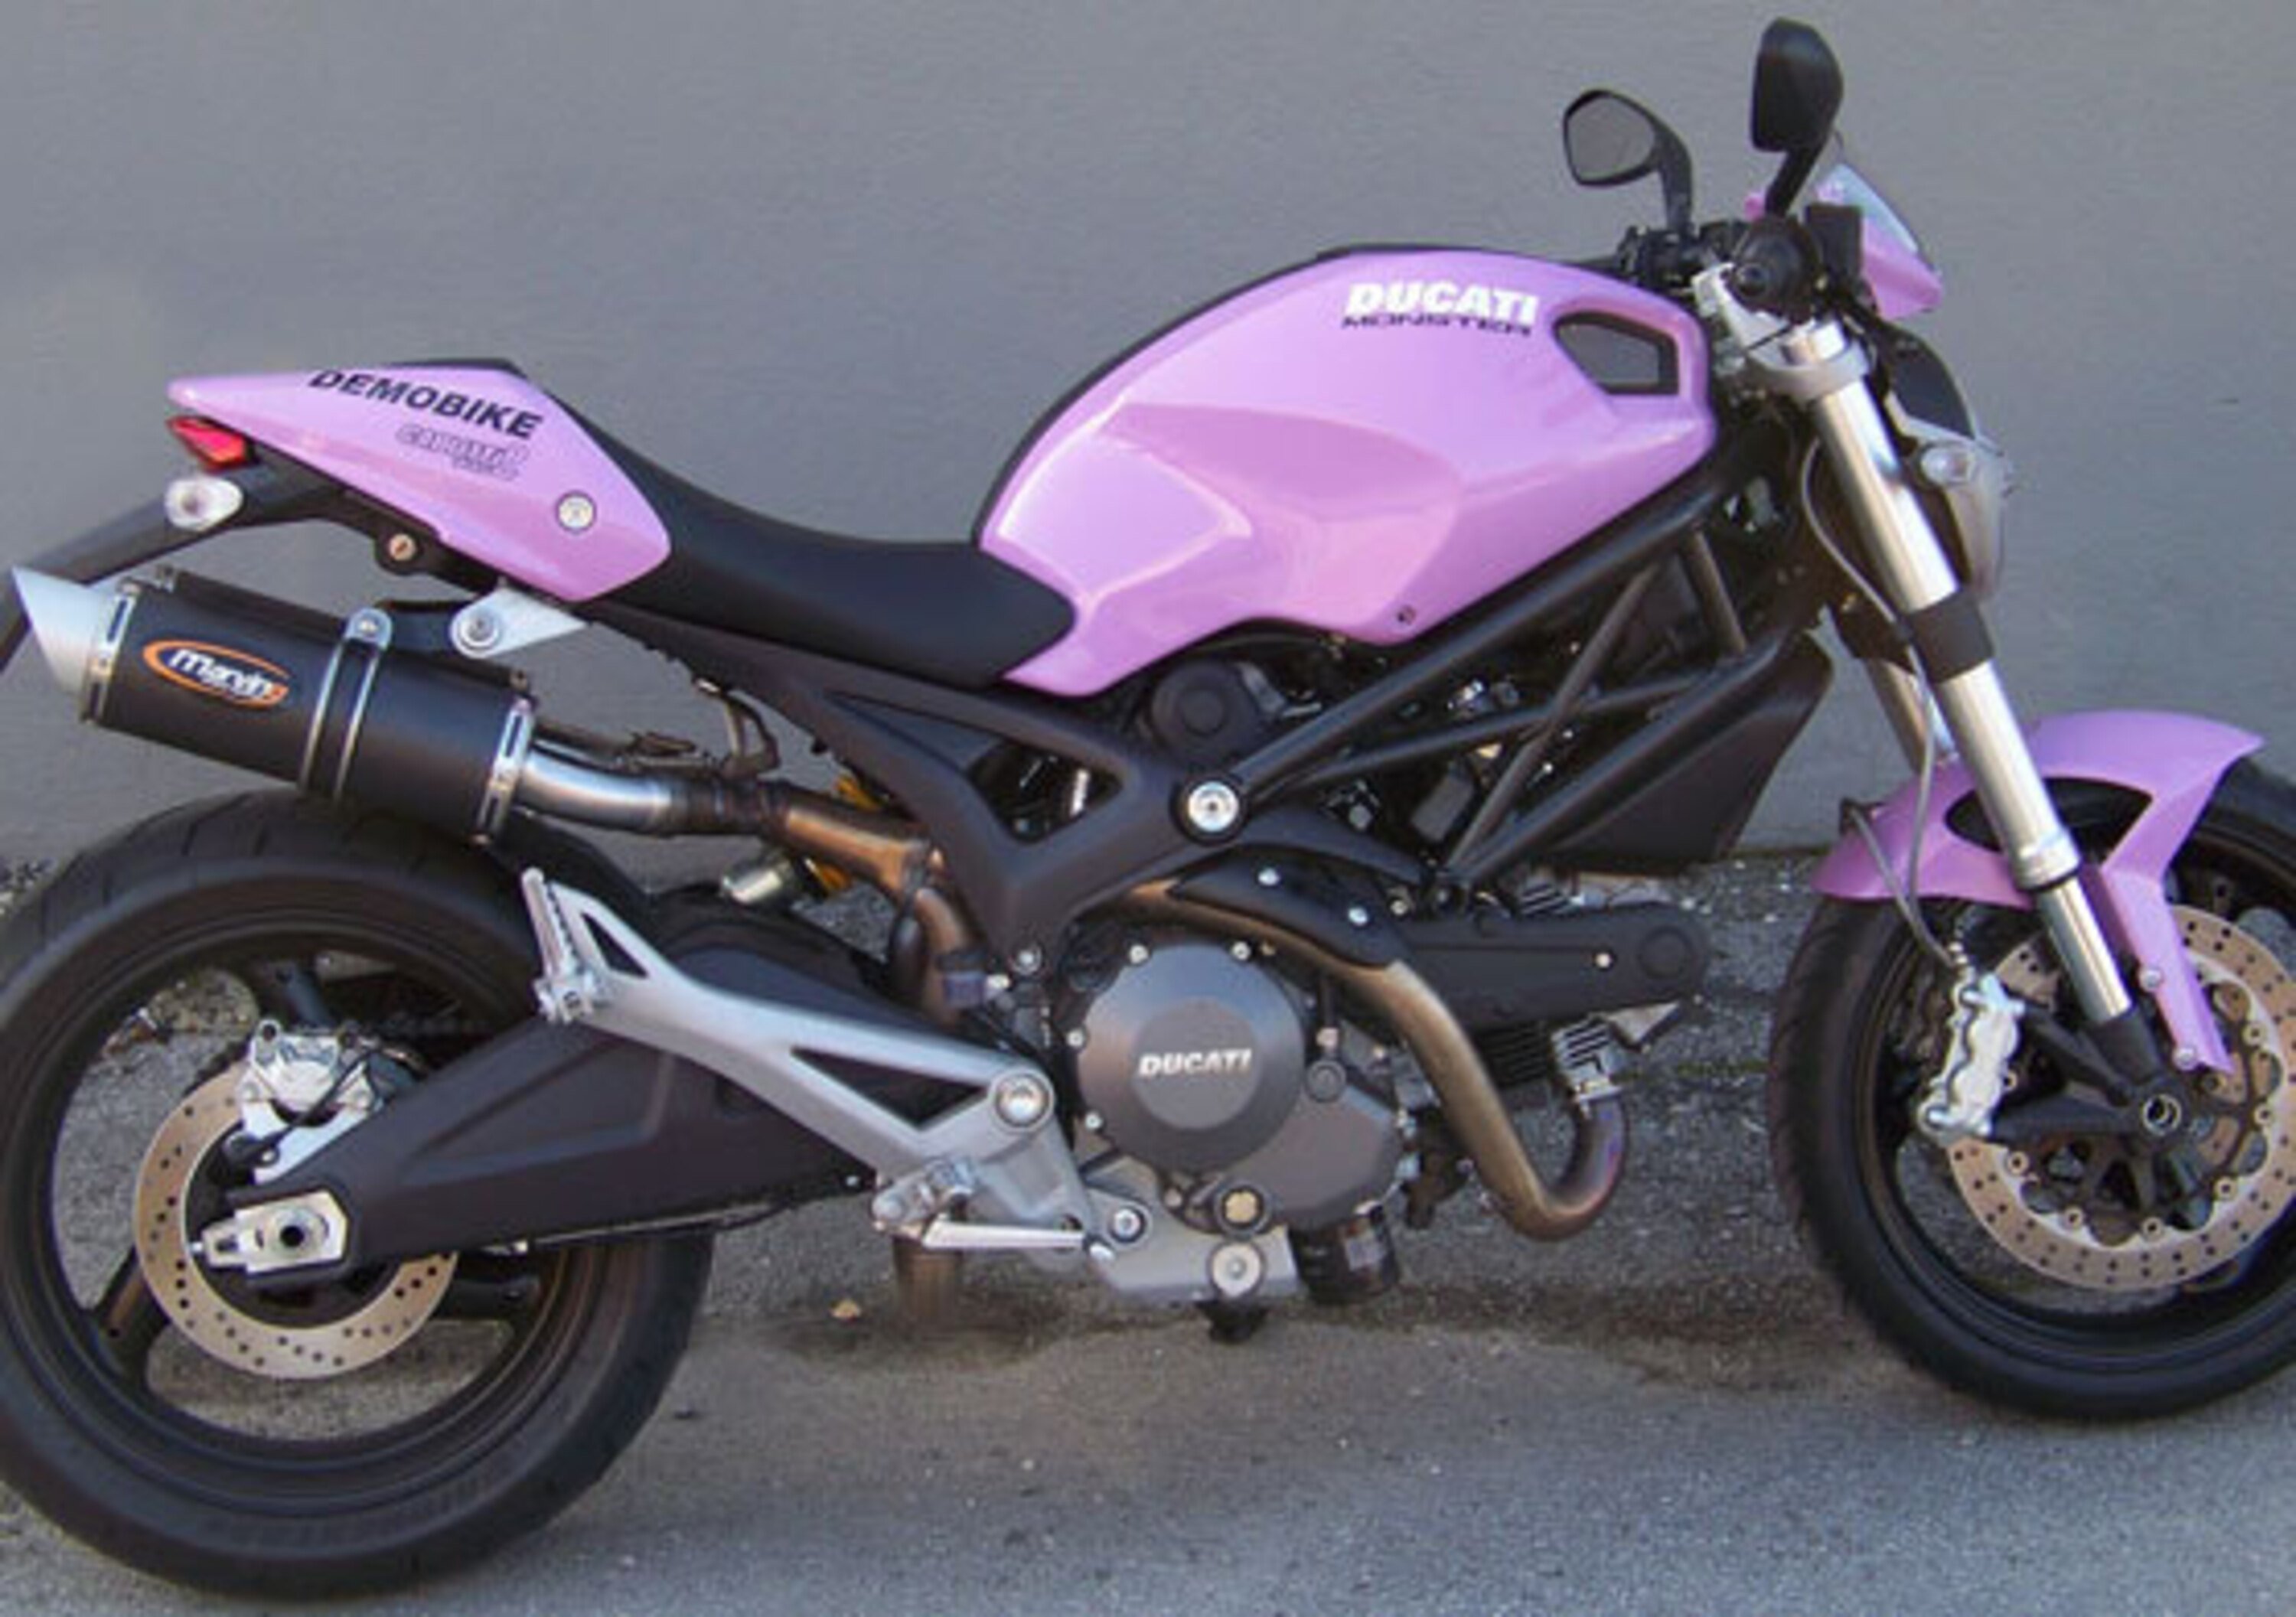 Marving per Ducati Monster 696